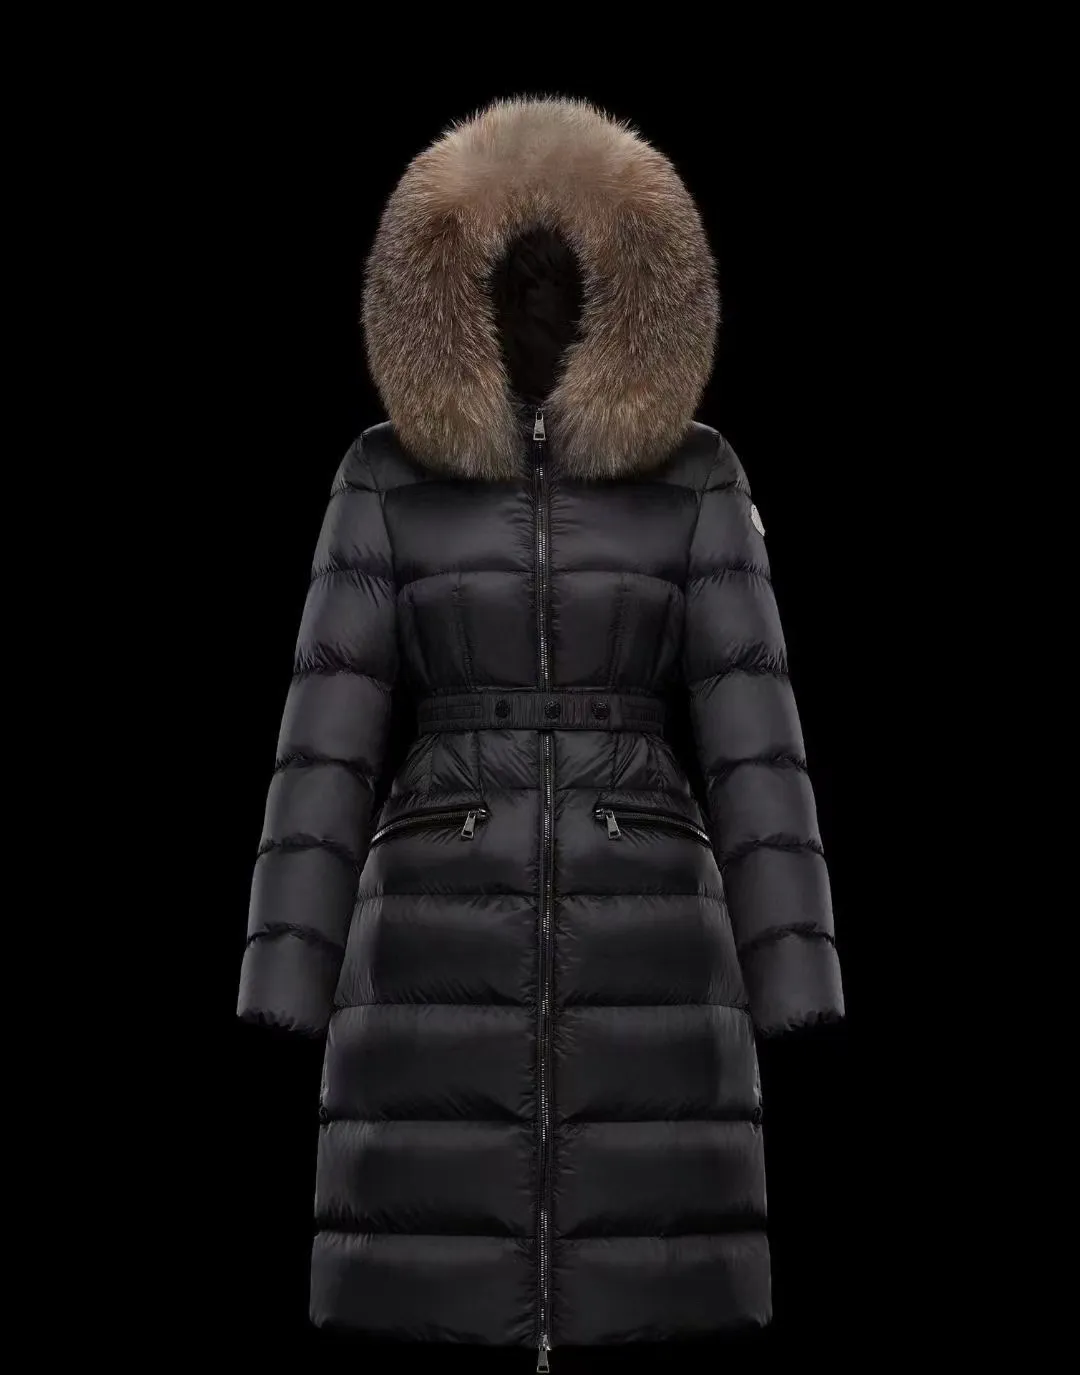 남자 다운 재킷 다운 코트 여자 후드 긴 소매 기하학적 의류 윈터웨어 복기 조끼 두꺼운 다운 코트 크기 xs-m